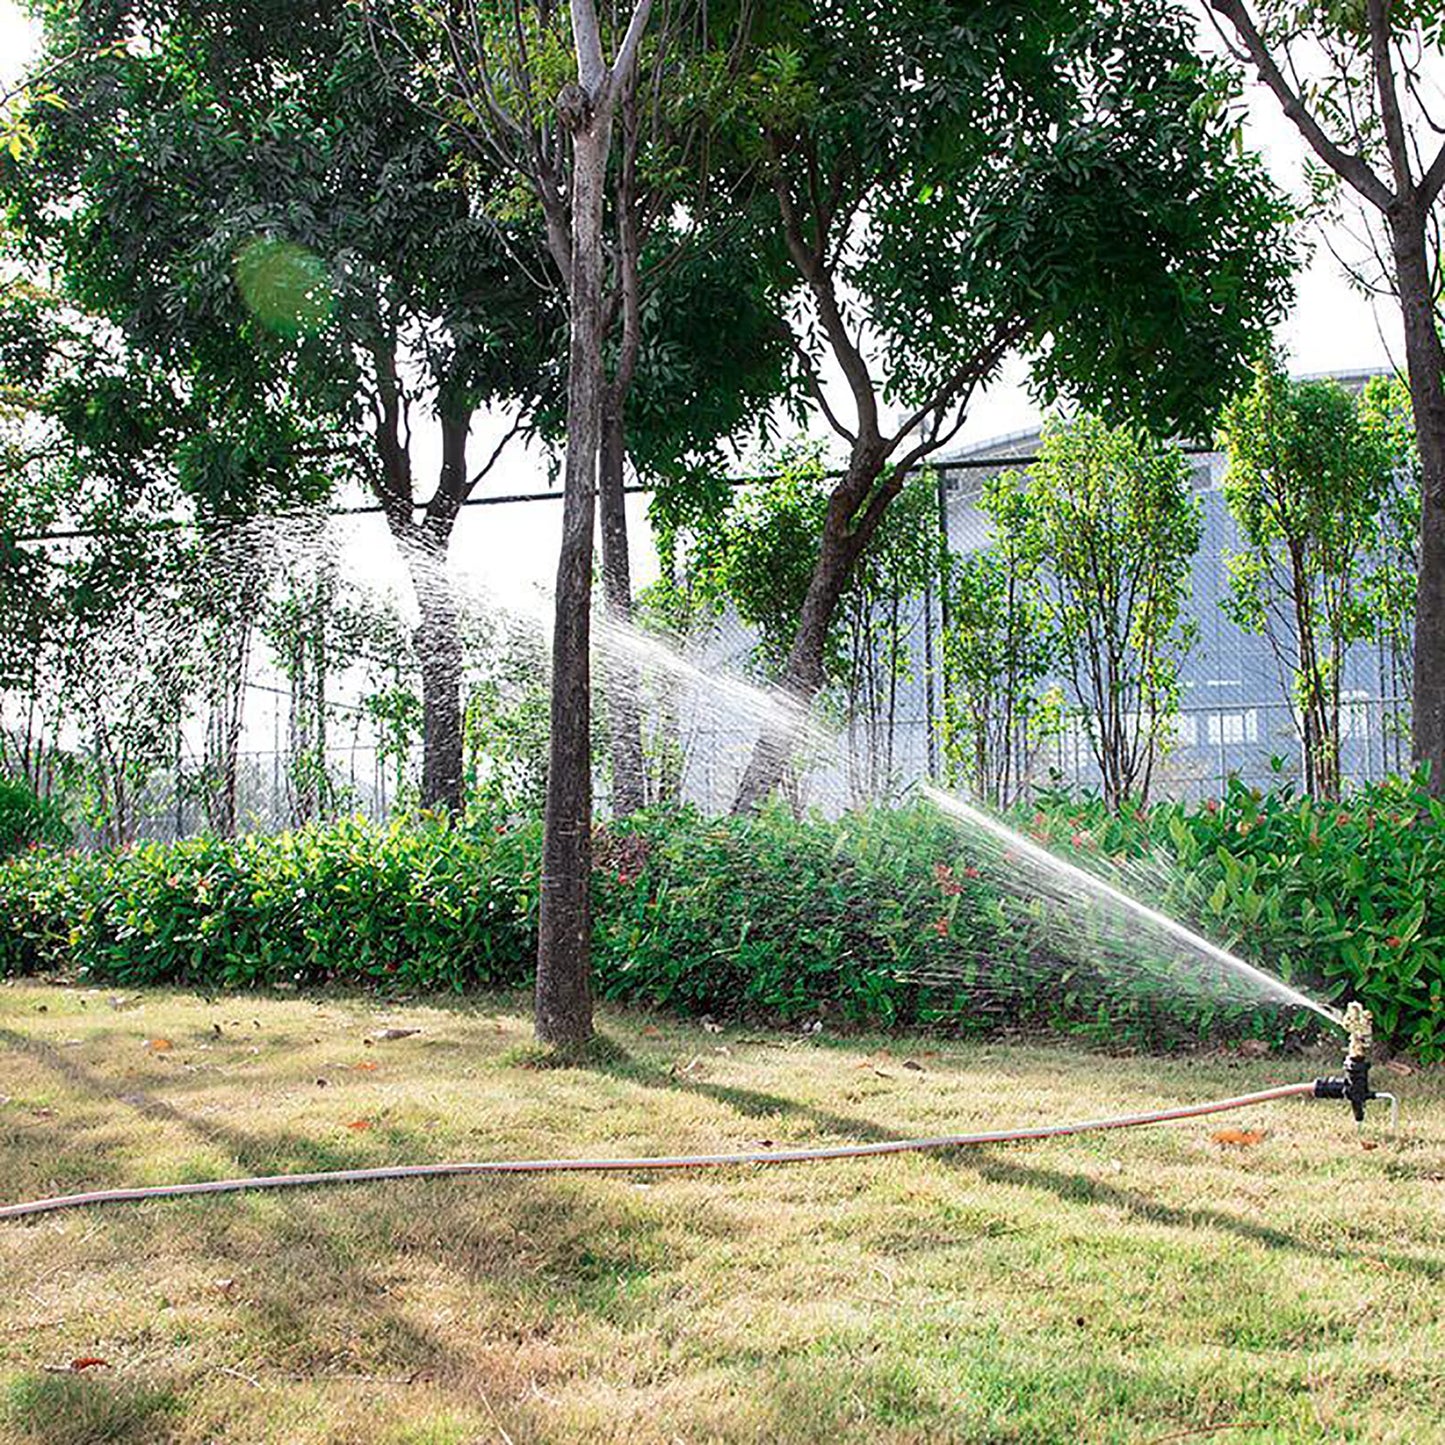 1/2 "Male Male Rocker Rocker Sprinkler Impact réglable Sprinkler Lawn Garden Park Orchard Field Irrigation Irrigation Arrosage Buse